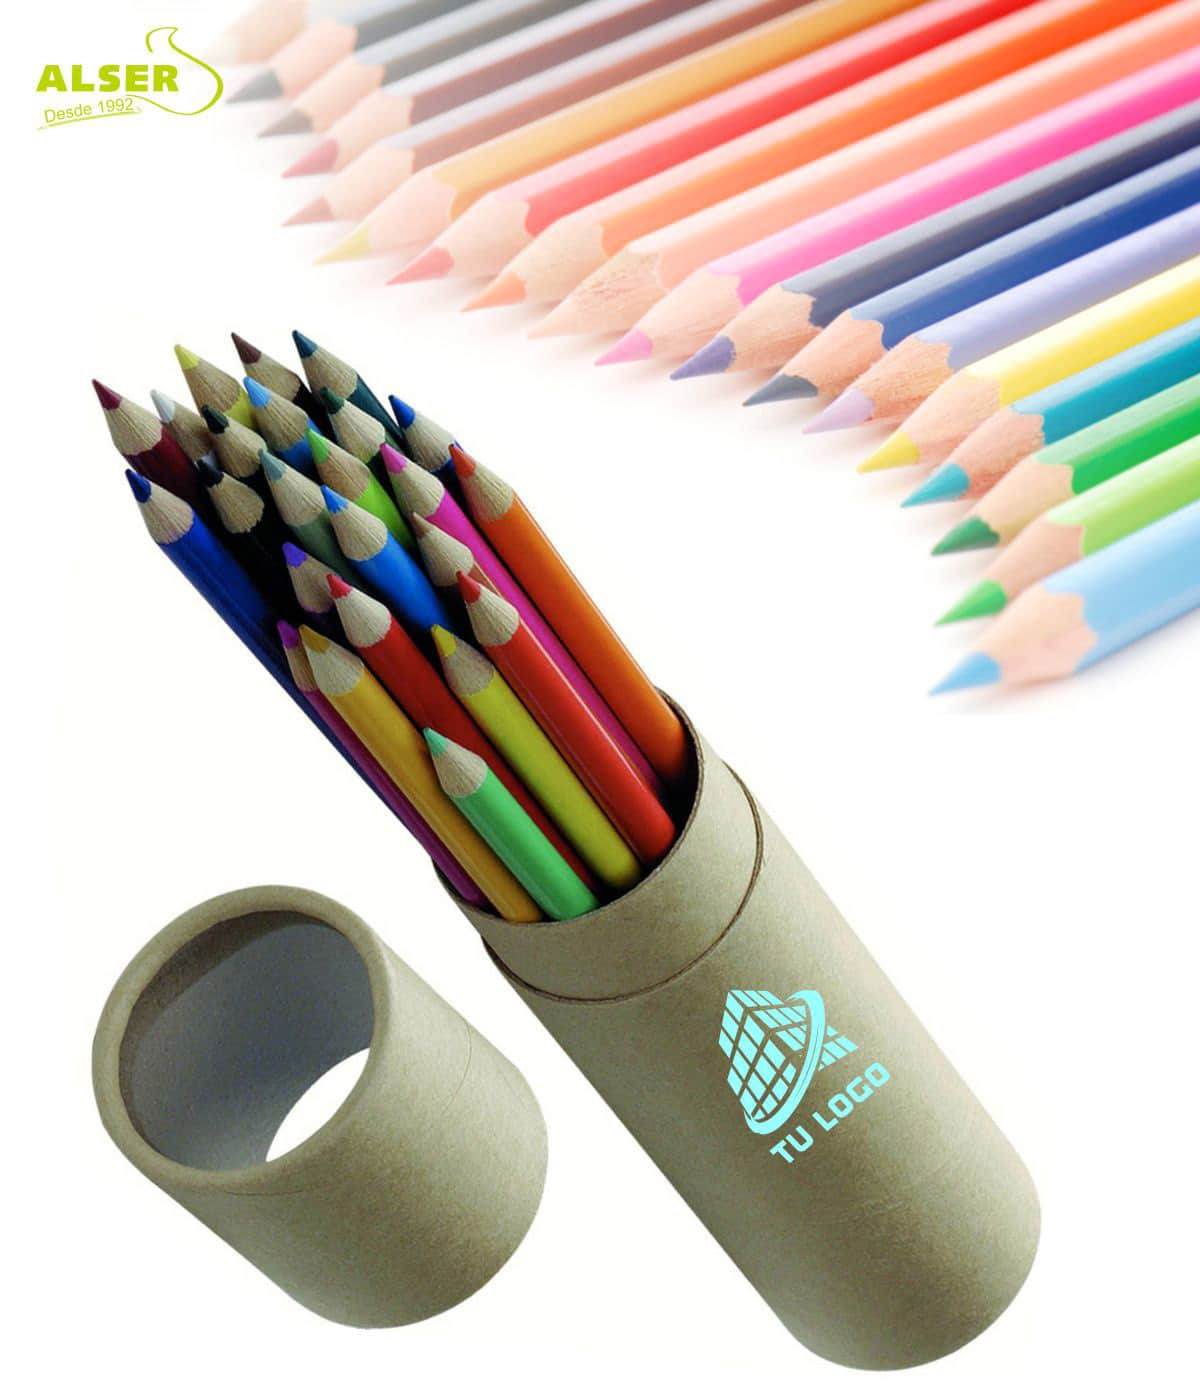 golpear Degenerar agudo Estuche lápices de colores | 24 lápices de colores